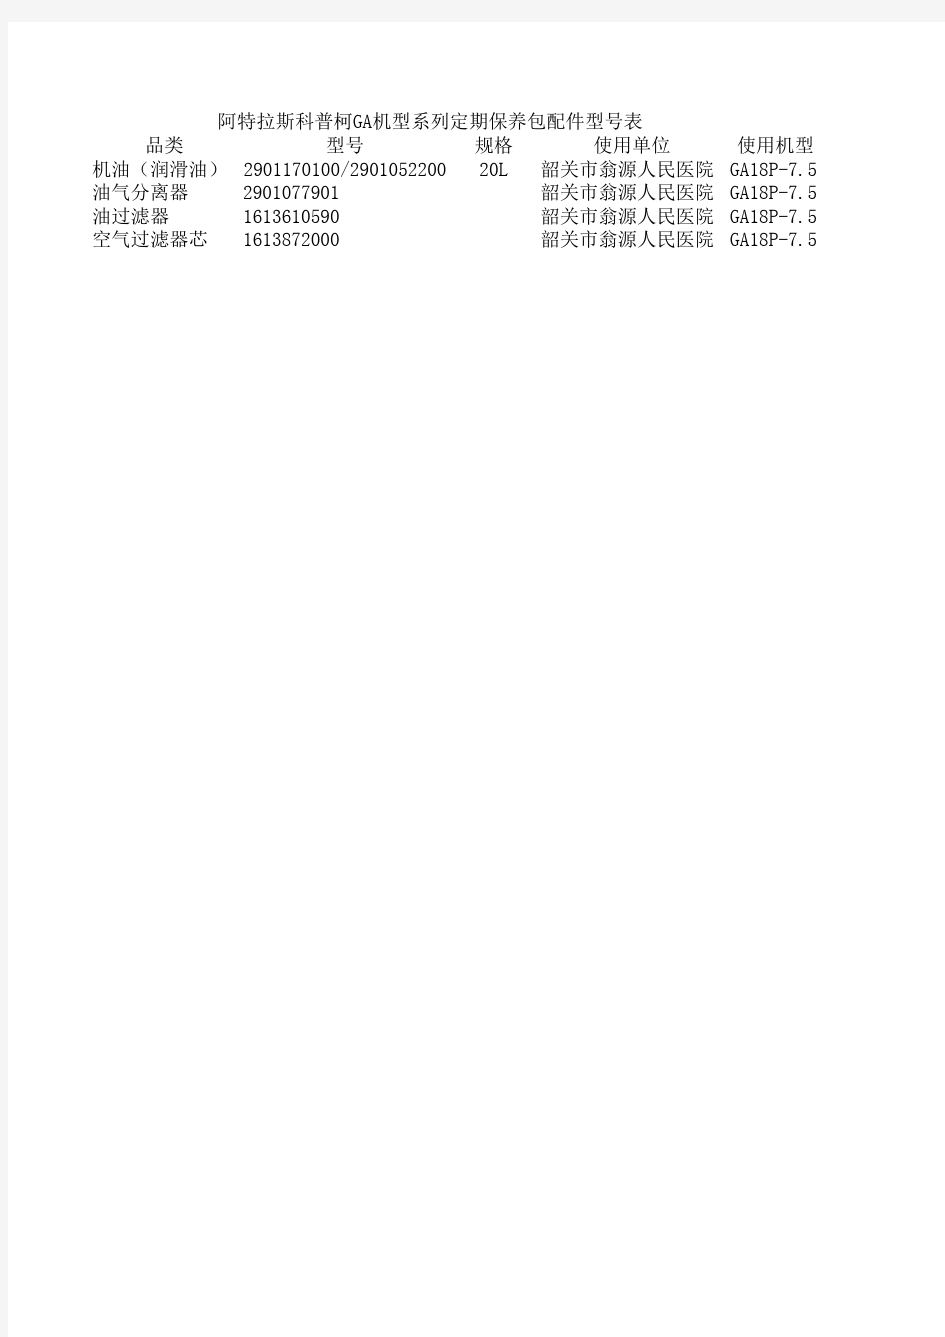 阿特拉斯科普柯GA机型系列定期保养包配件型号表